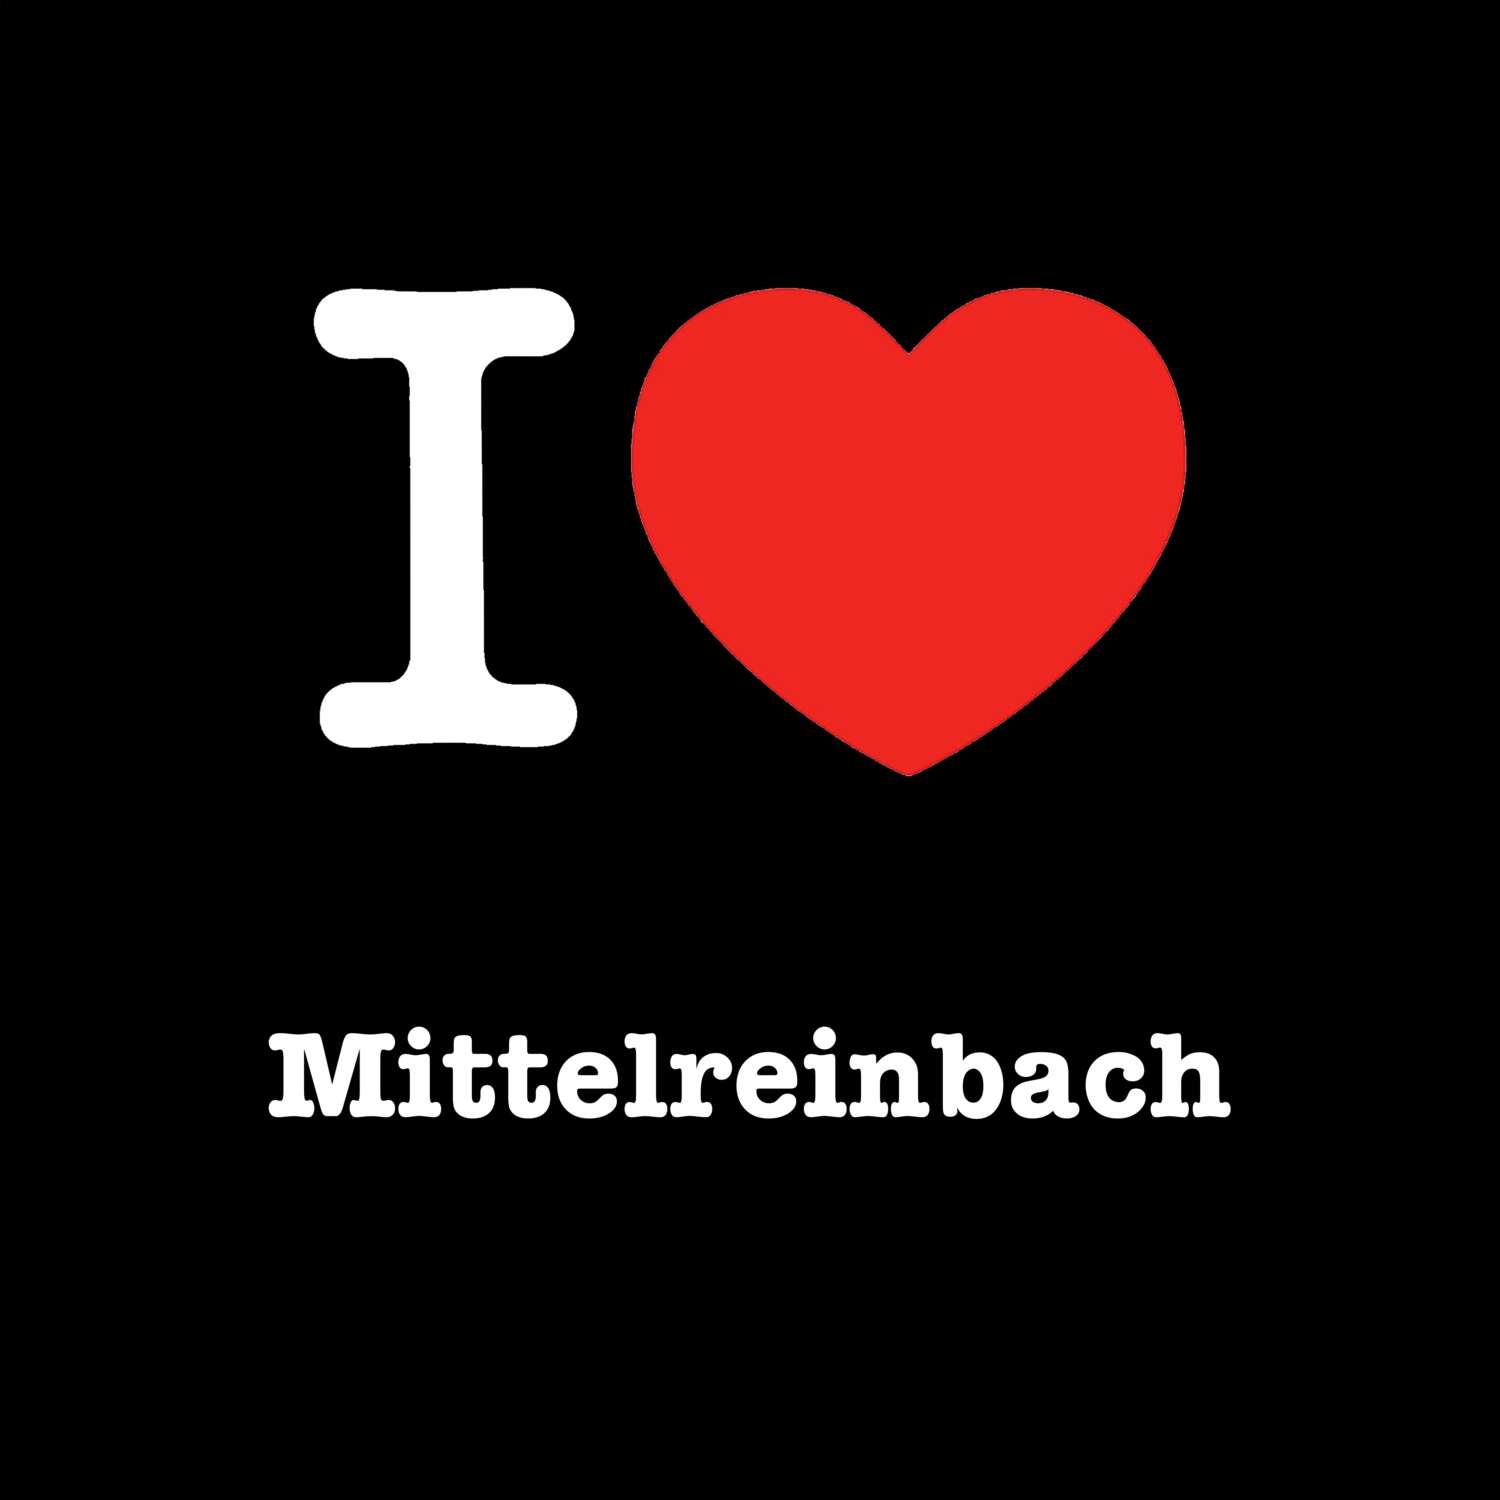 Mittelreinbach T-Shirt »I love«